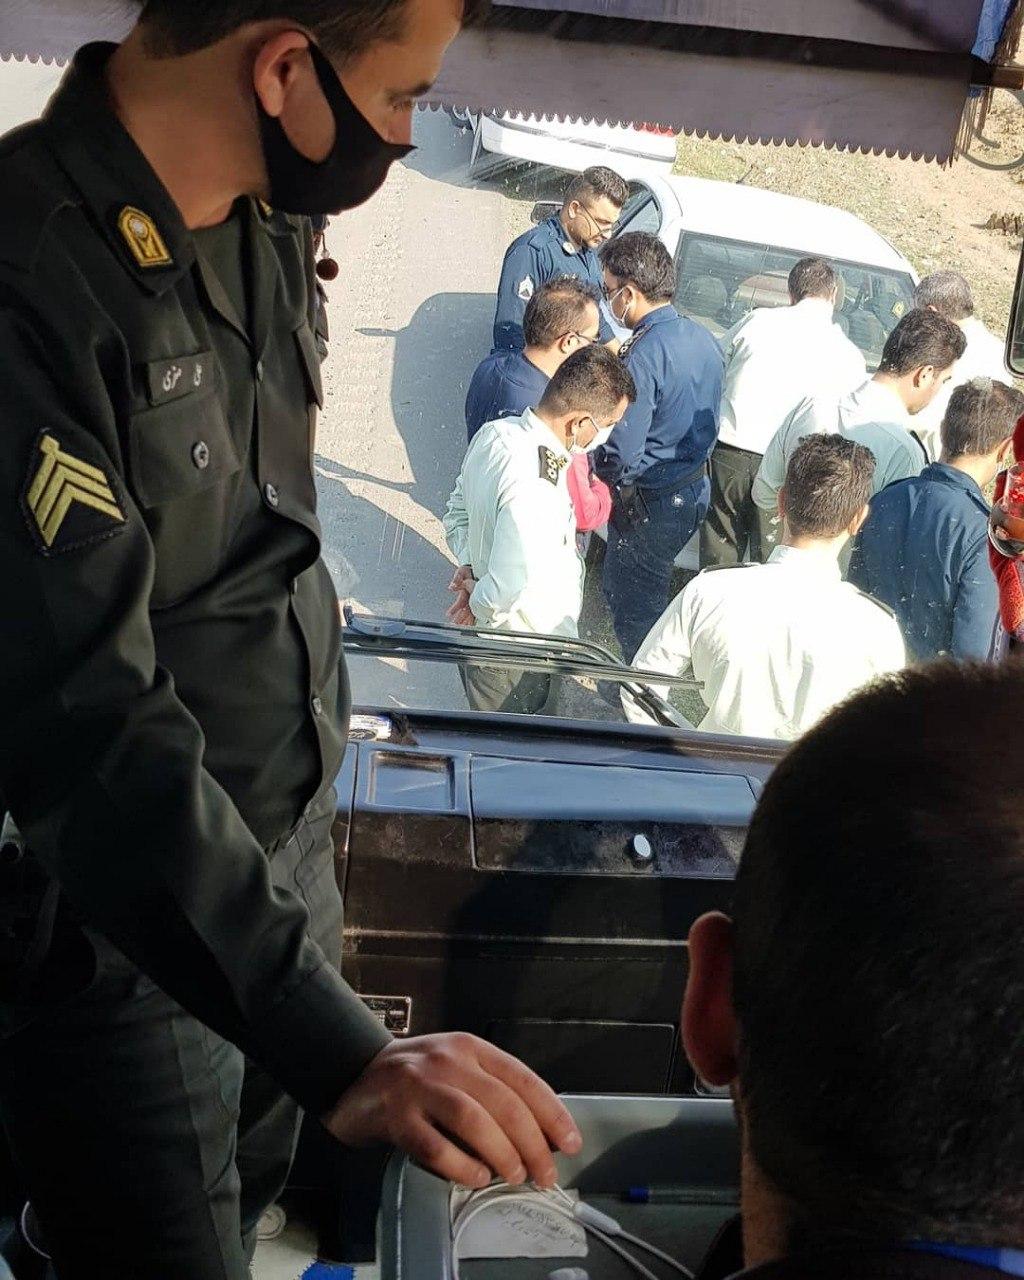 نیروی انتظامی از تجمع دانشجویان در شرکت کشت و صنعت مغان ممانعت کرد + عکس